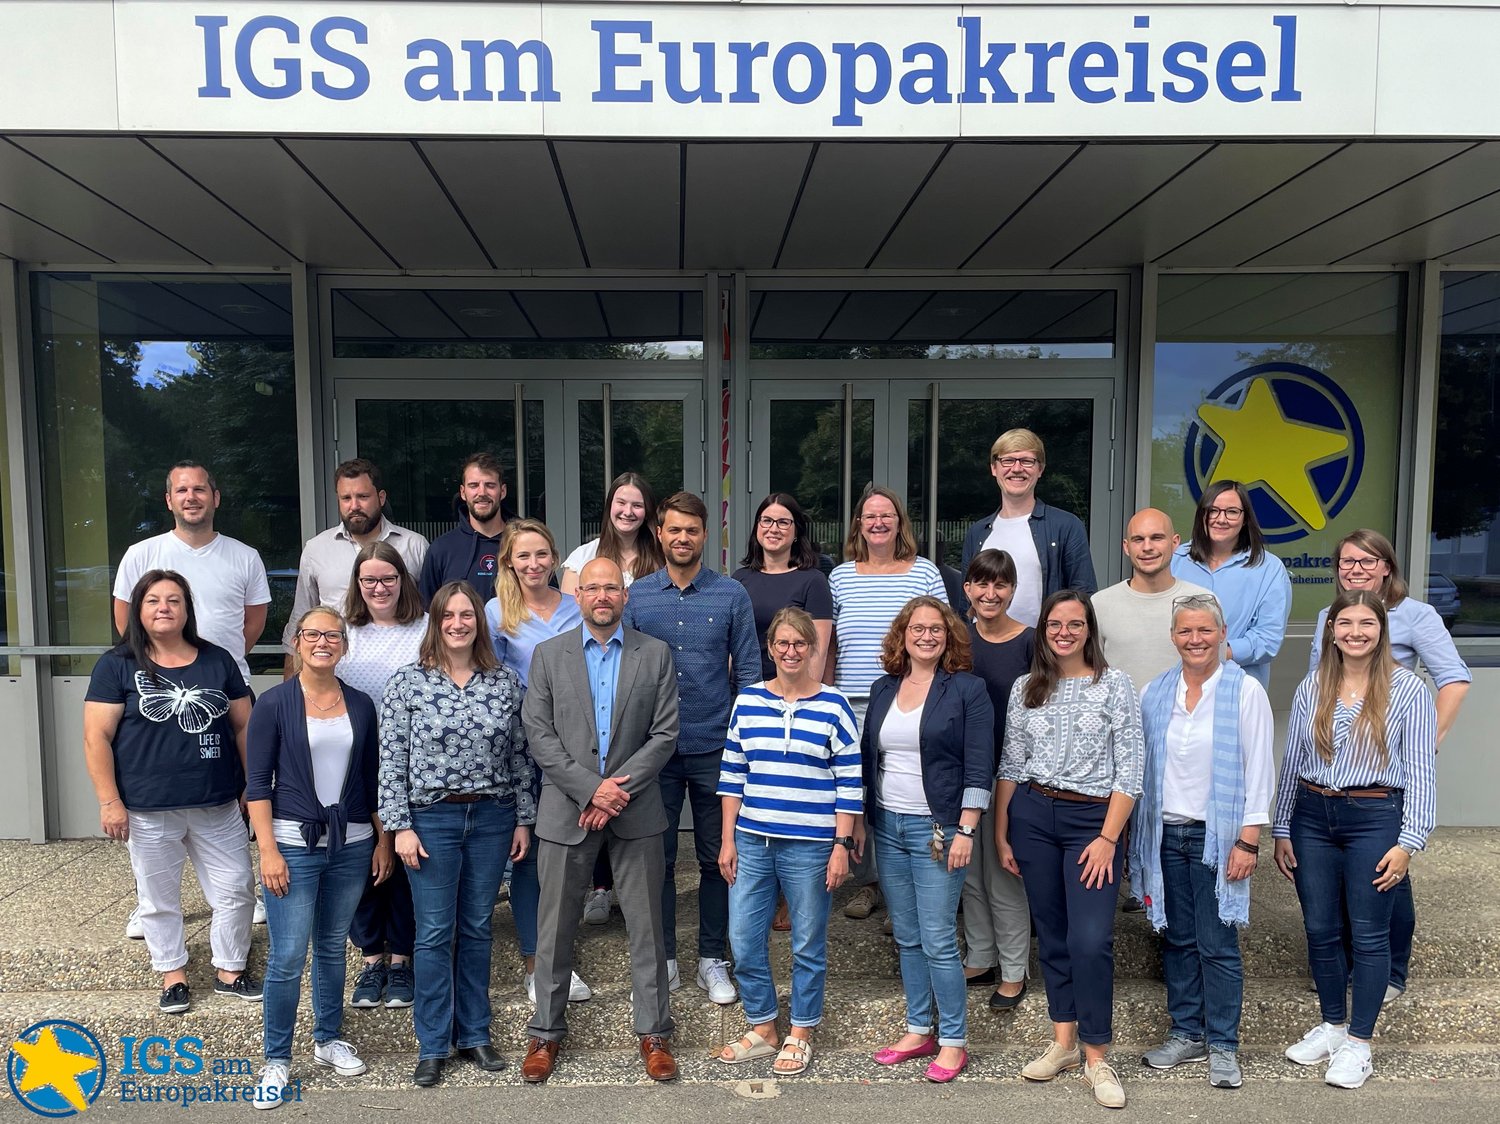 Alle Mitglieder des Teams der IGS am Europakreisel vor dem Haupteingang der IGS am Europakreisel